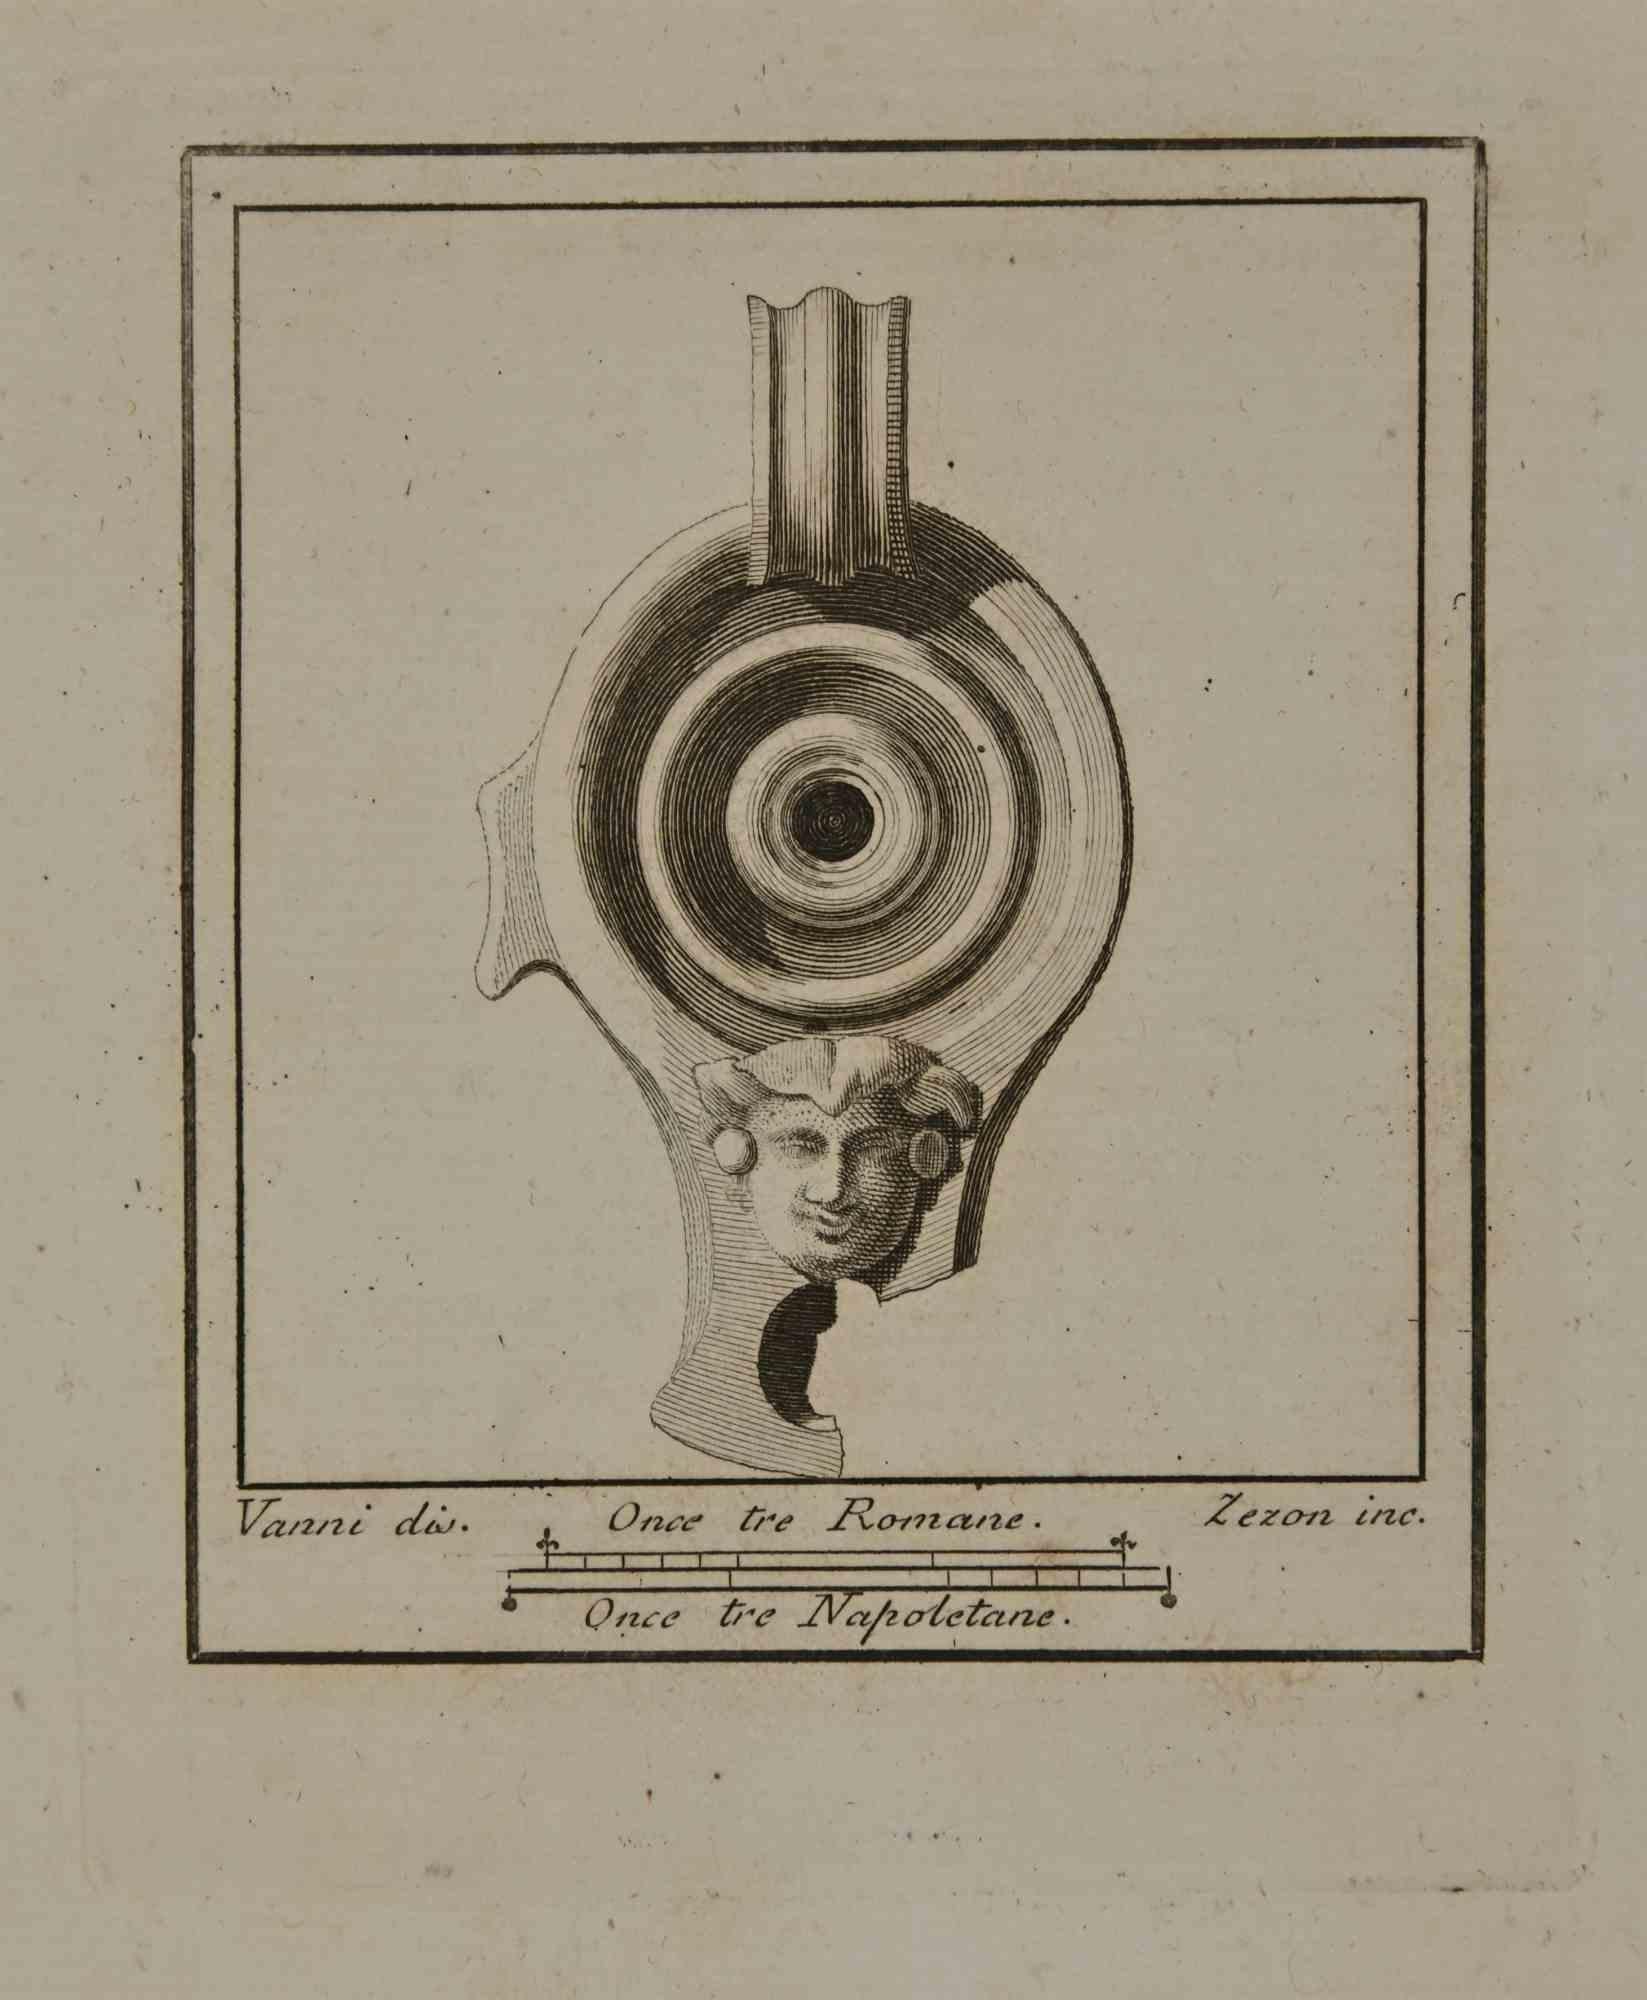 Antikes Stilleben aus der Serie "Antiquitäten von Herculaneum", ist eine Radierung auf Papier, die von Antonio Zezon und Nicola Vanni im 18.

Signiert auf der Platte.

Gute Bedingungen bis auf die Beschilderung aufgrund der Zeit.

Die Radierung